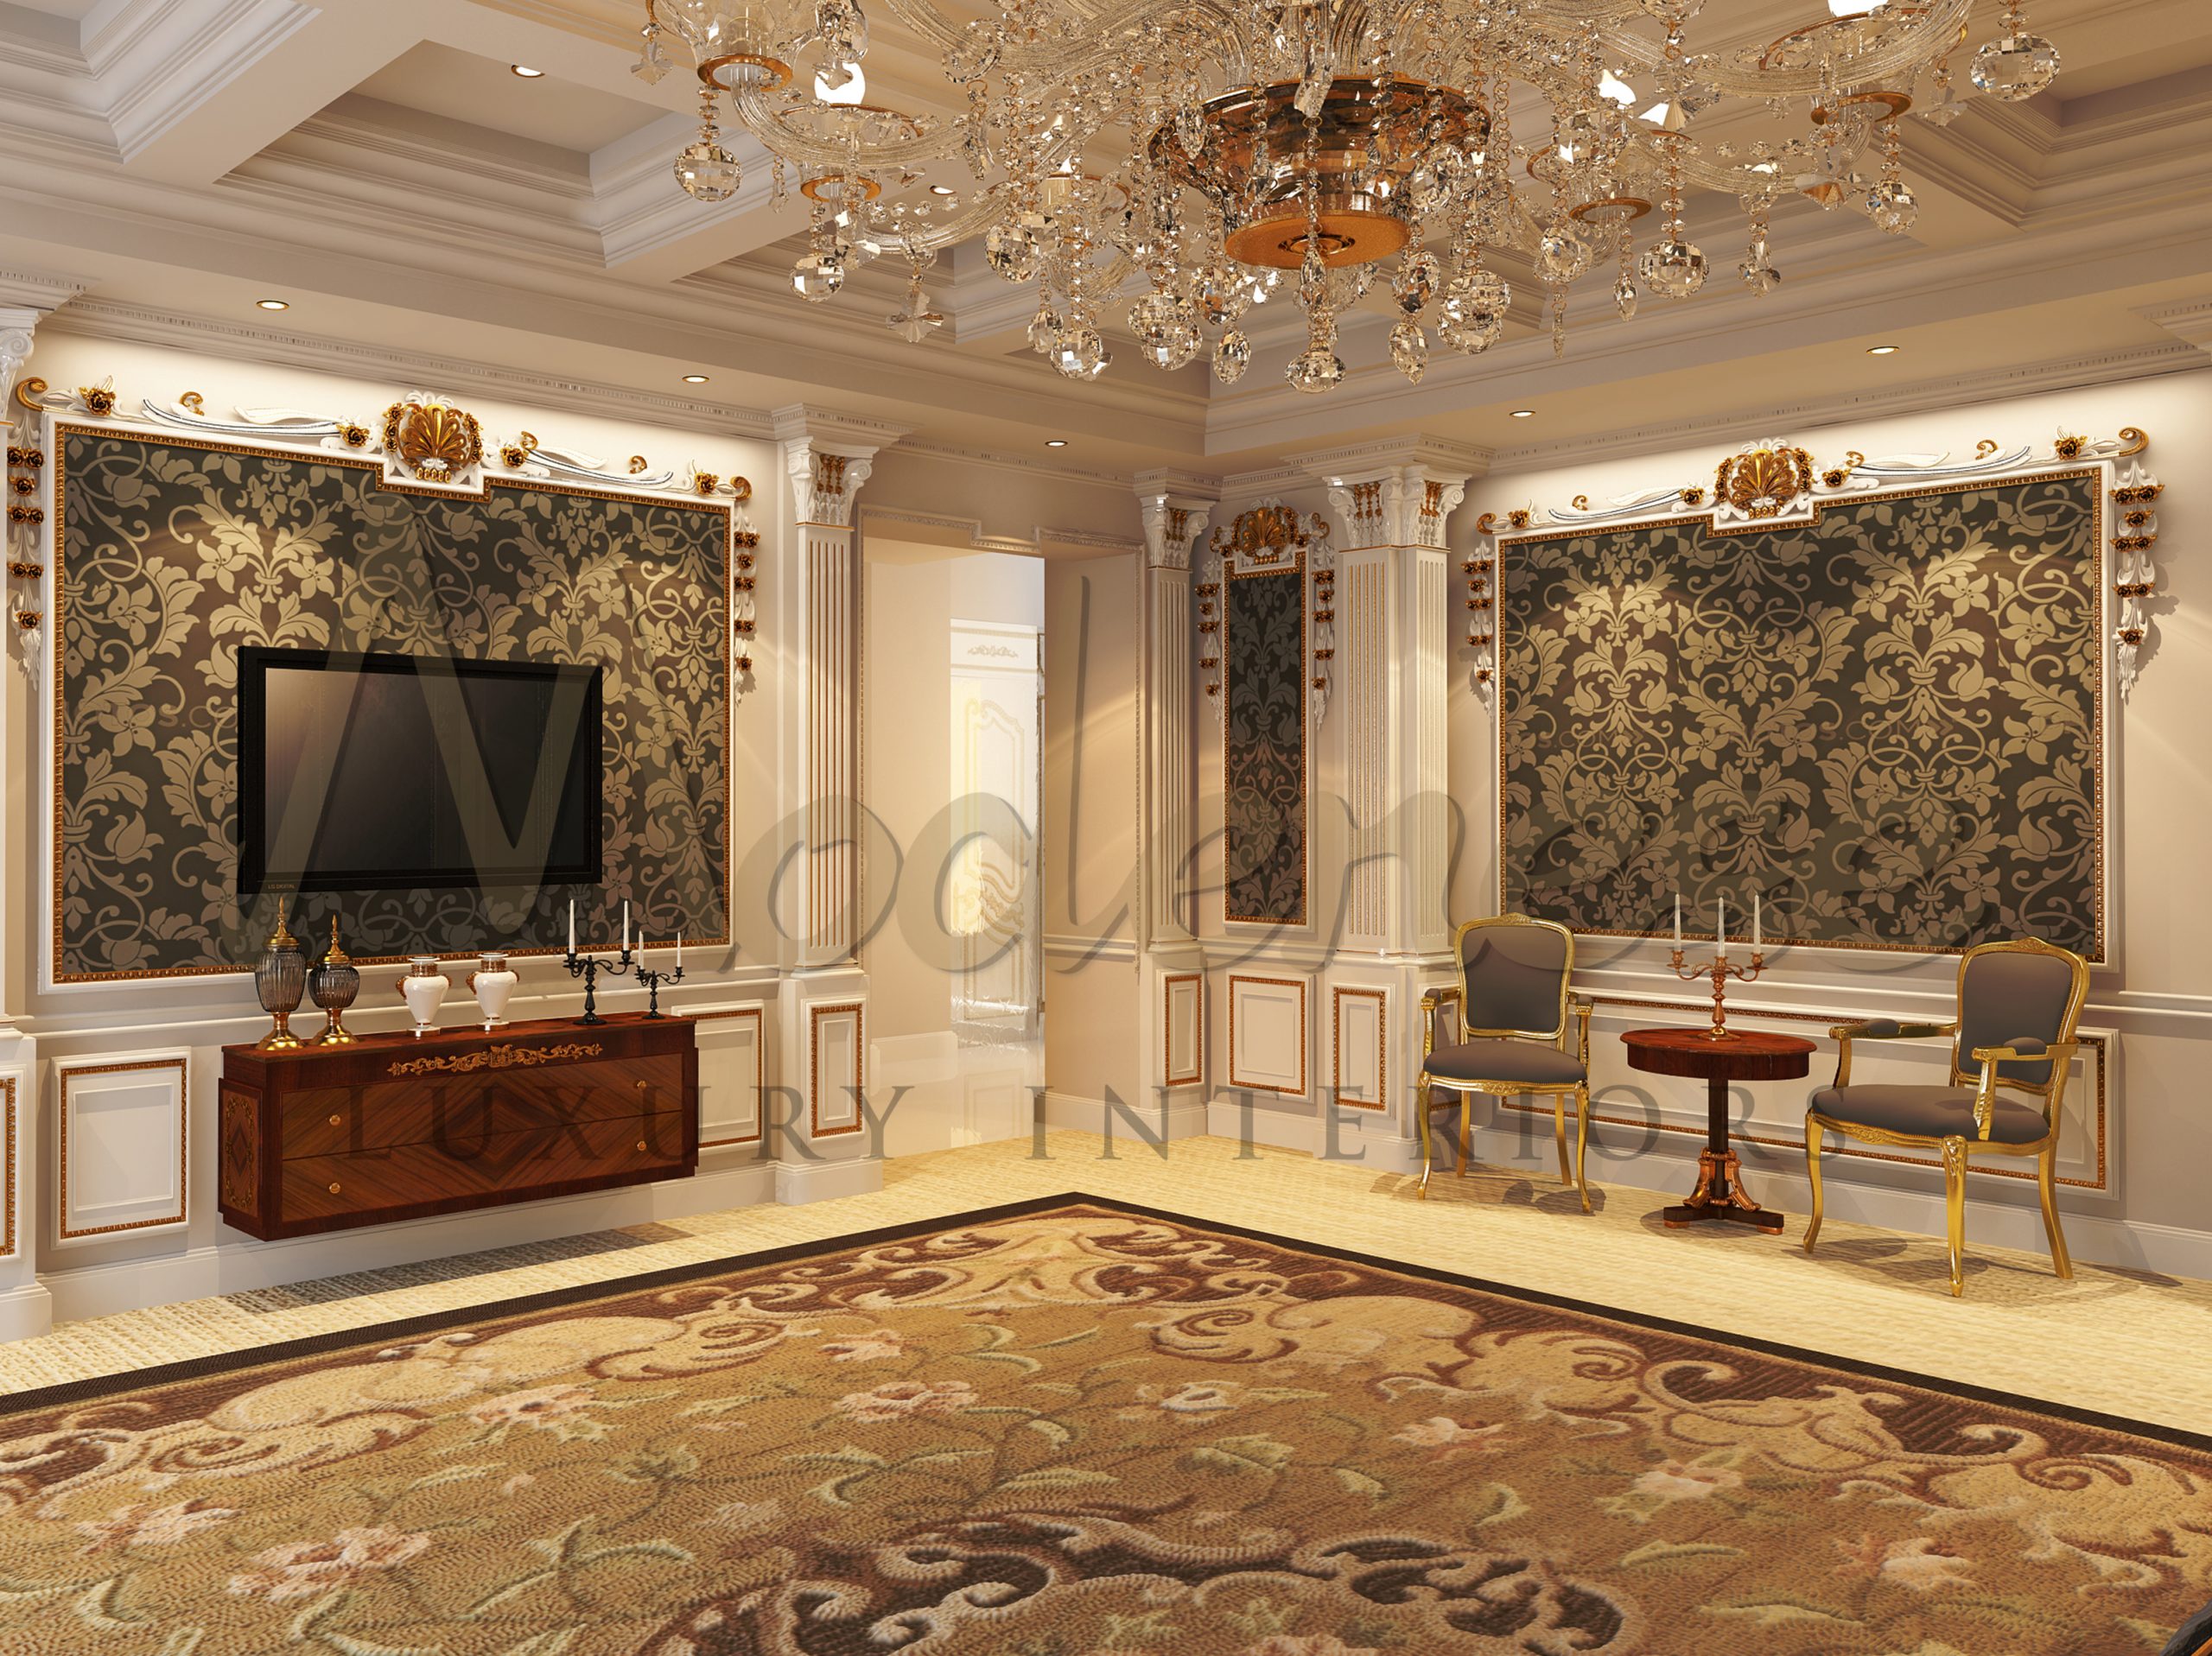 Chambres royales de luxe pour un projet à Londres - Royaume-Uni